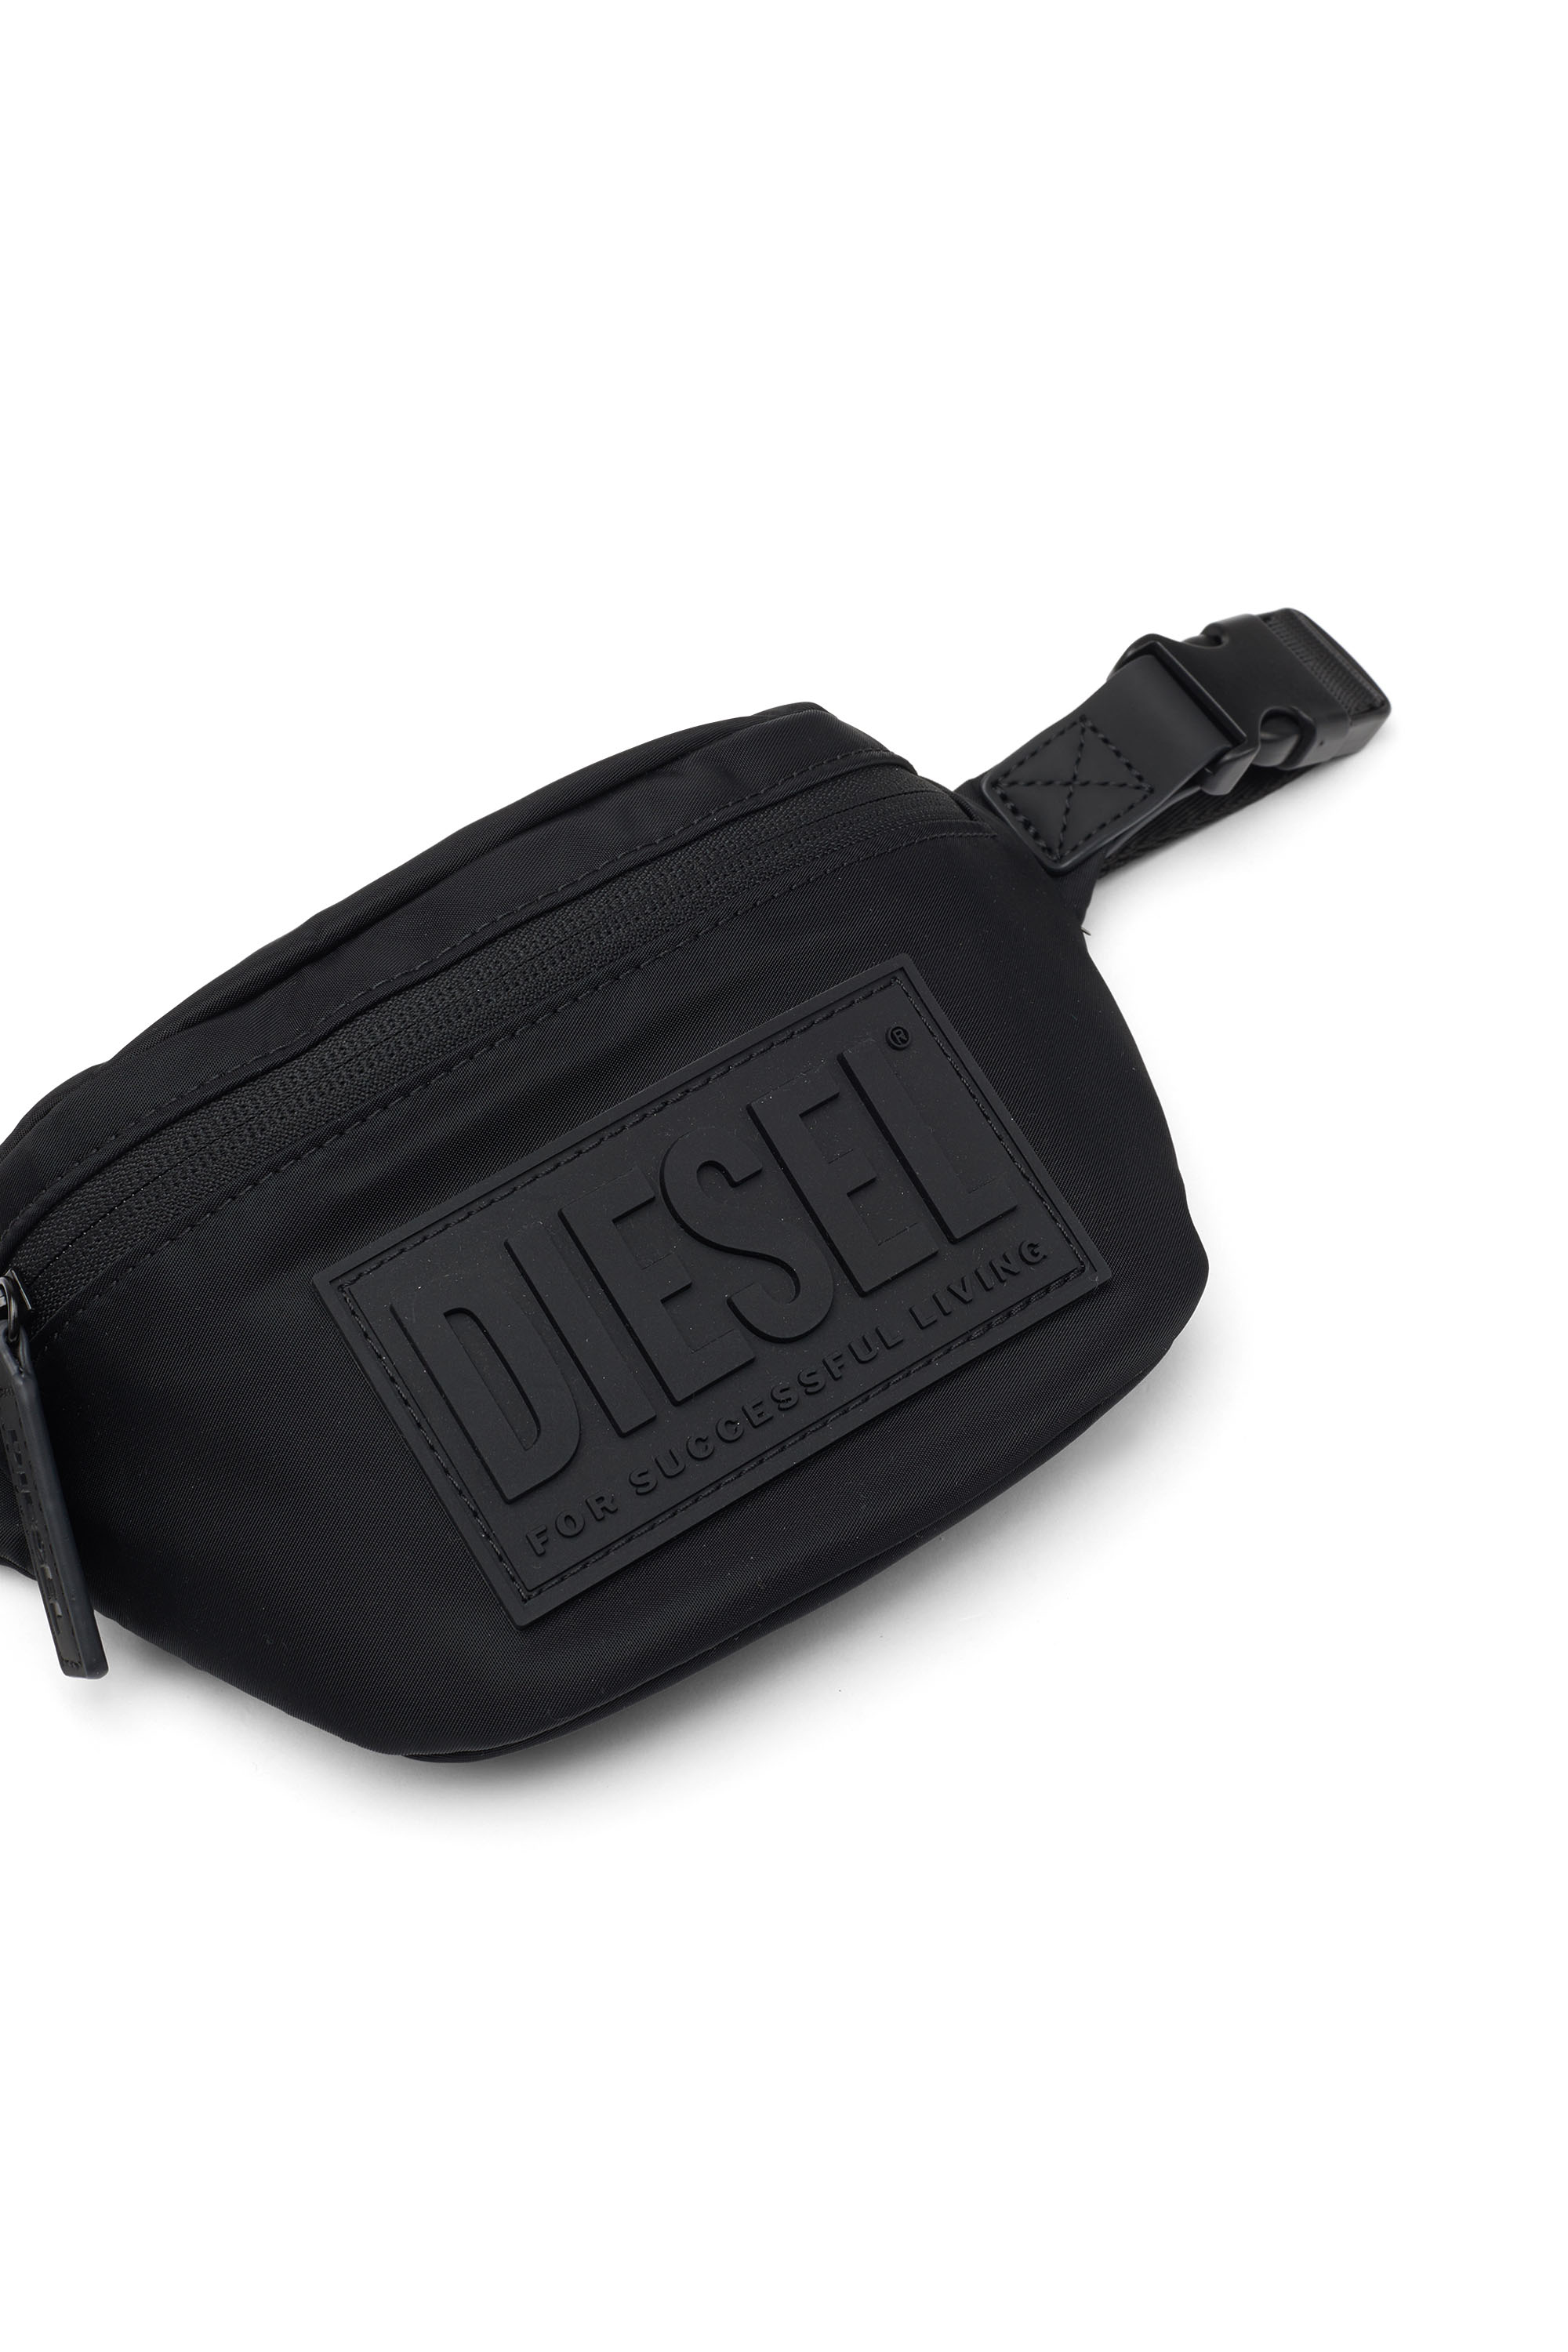 Diesel - BELTB55, Black - Image 5